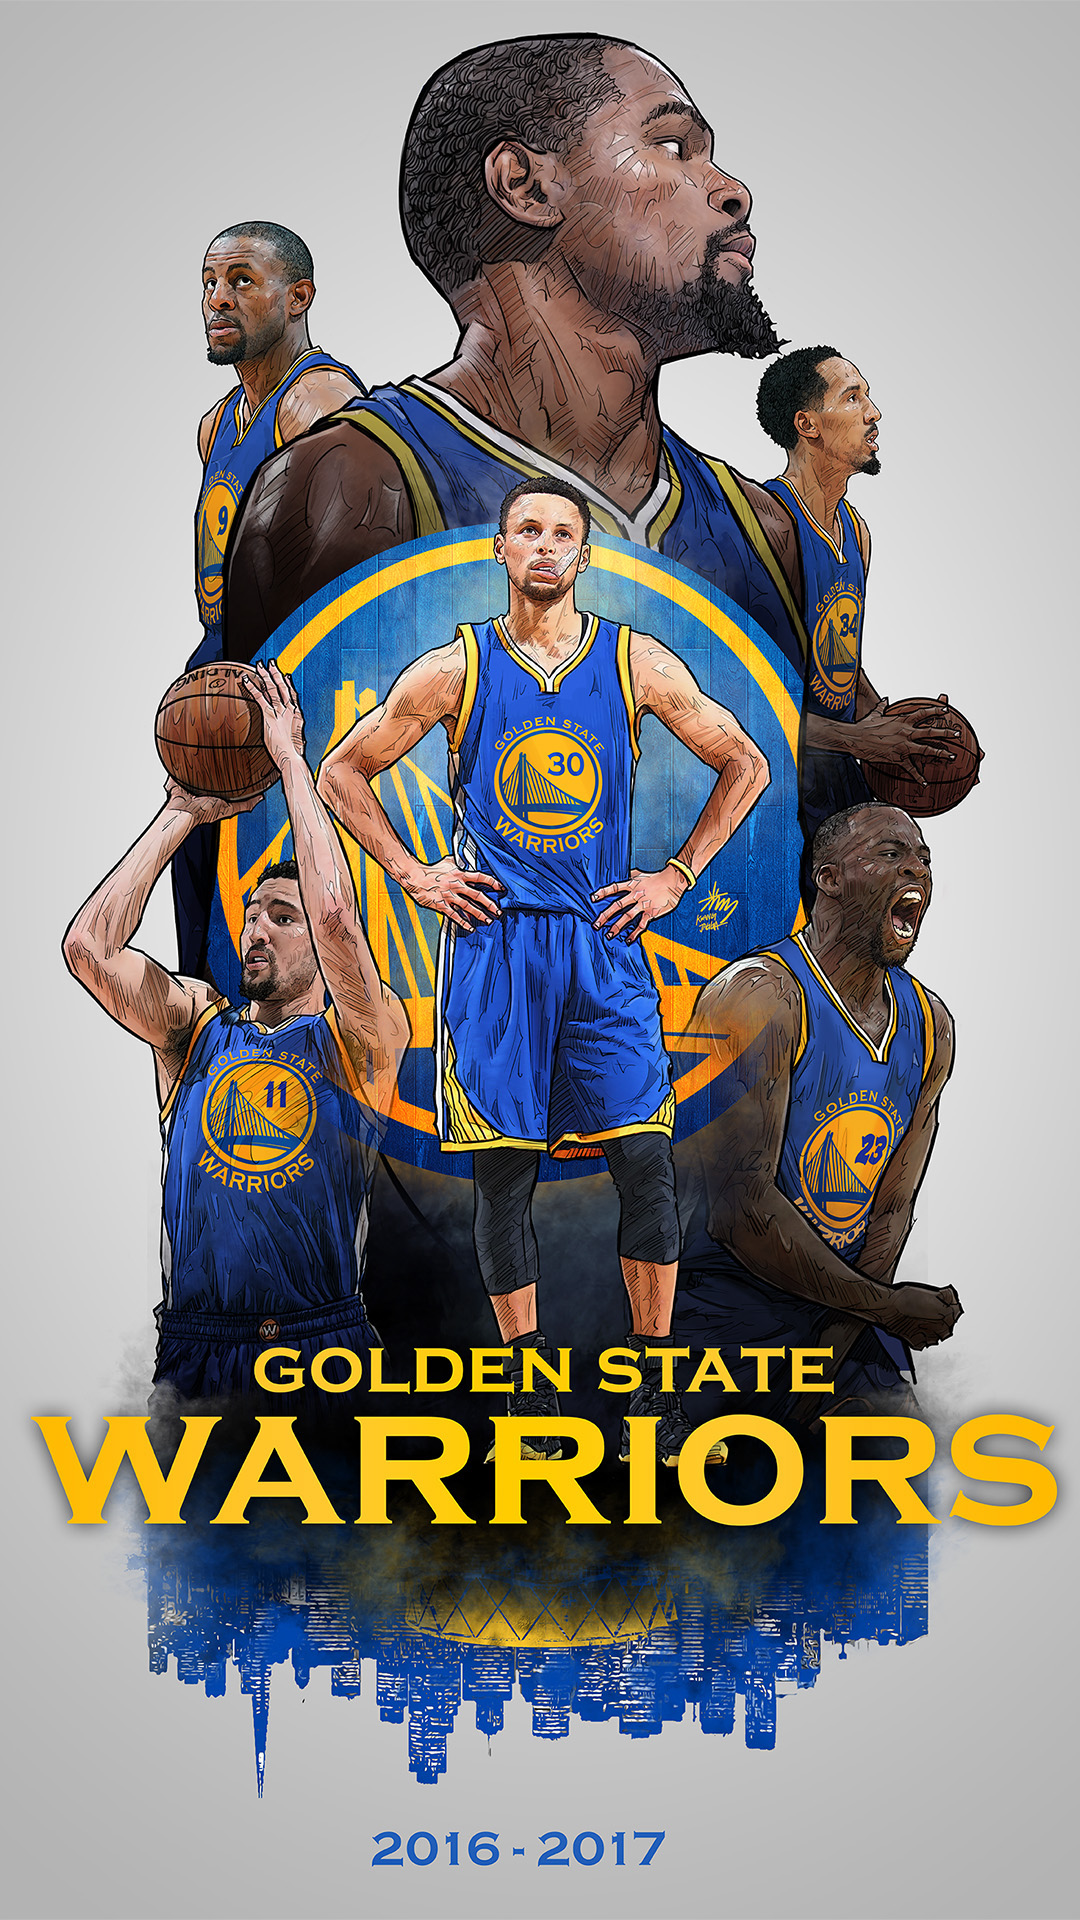 golden state warriors 2017 fond d'écran,joueur de basketball,tenue de sport,basketball,jersey,affiche